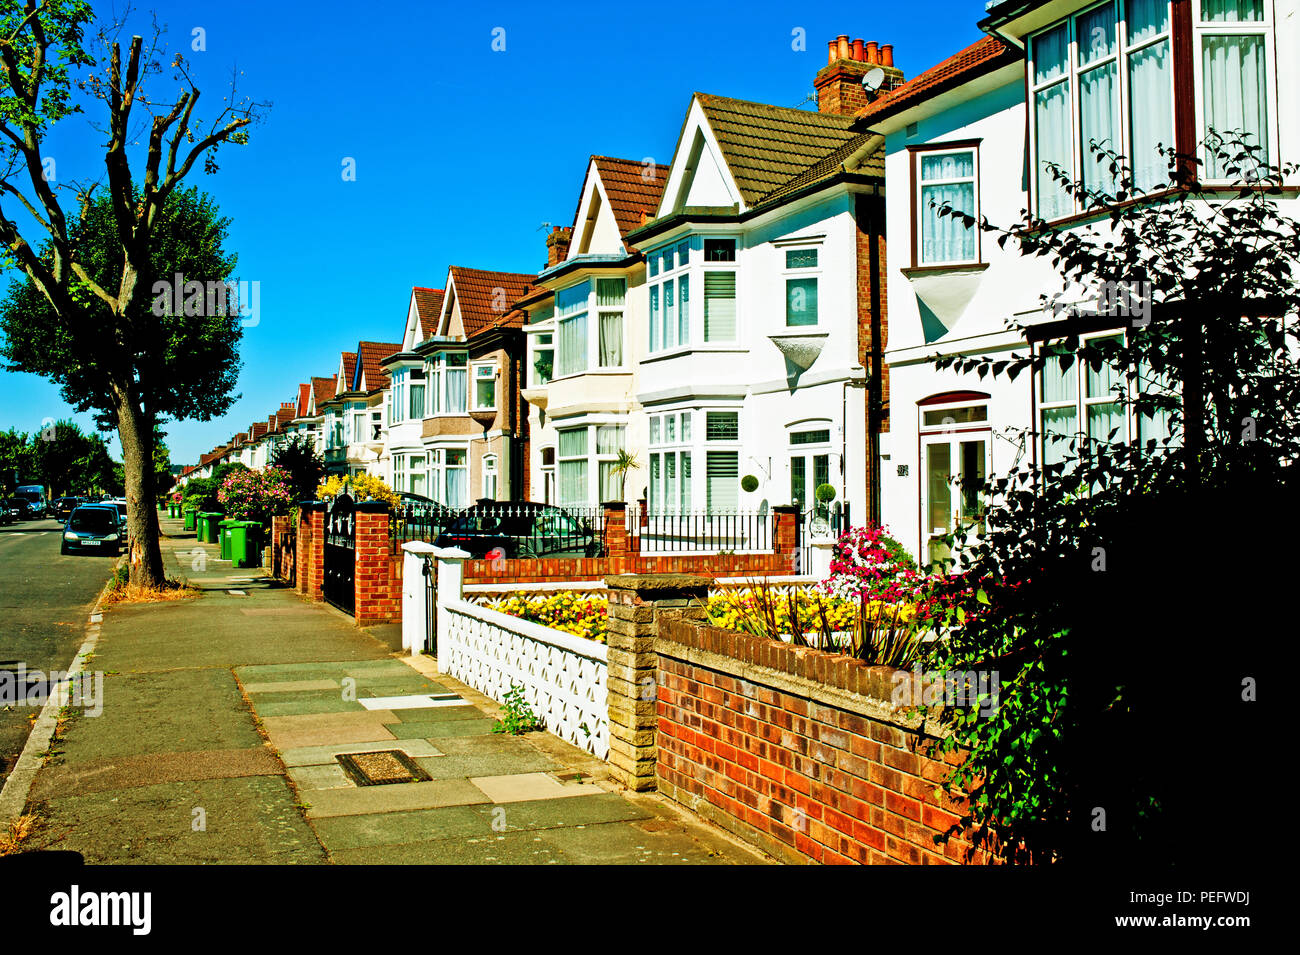 Propertys semi-détachée, Catford, arrondissement de Lewisham, Londres, Angleterre Banque D'Images